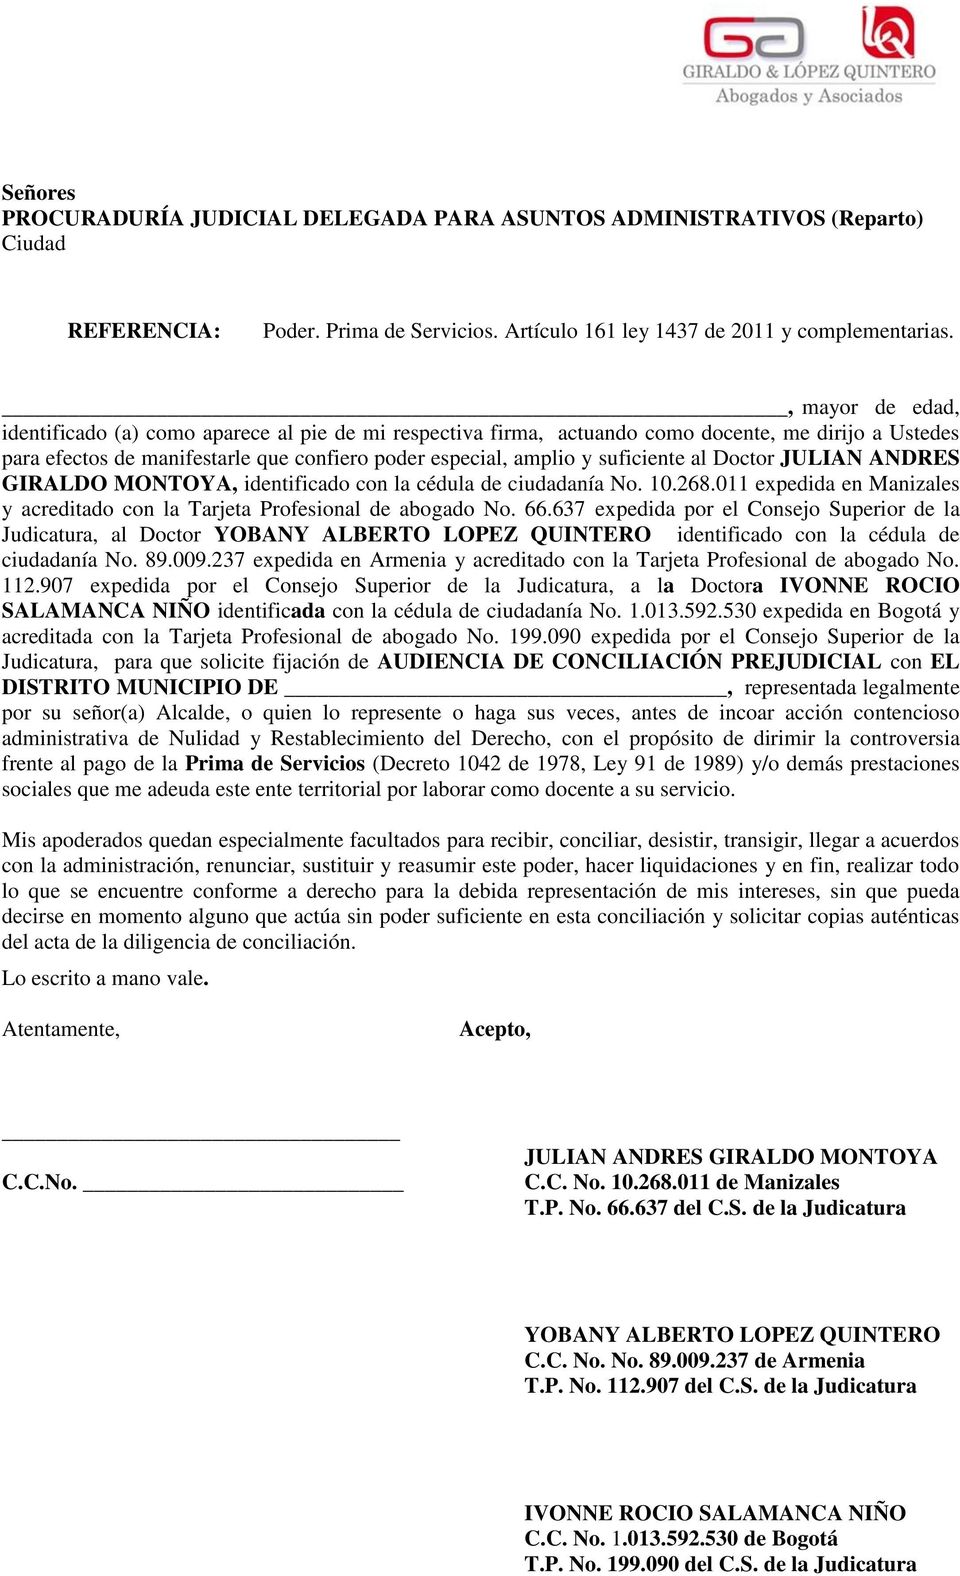 al Doctor JULIAN ANDRES GIRALDO MONTOYA, identificado con la cédula de ciudadanía No. 10.268.011 expedida en Manizales y acreditado con la Tarjeta Profesional de abogado No. 66.